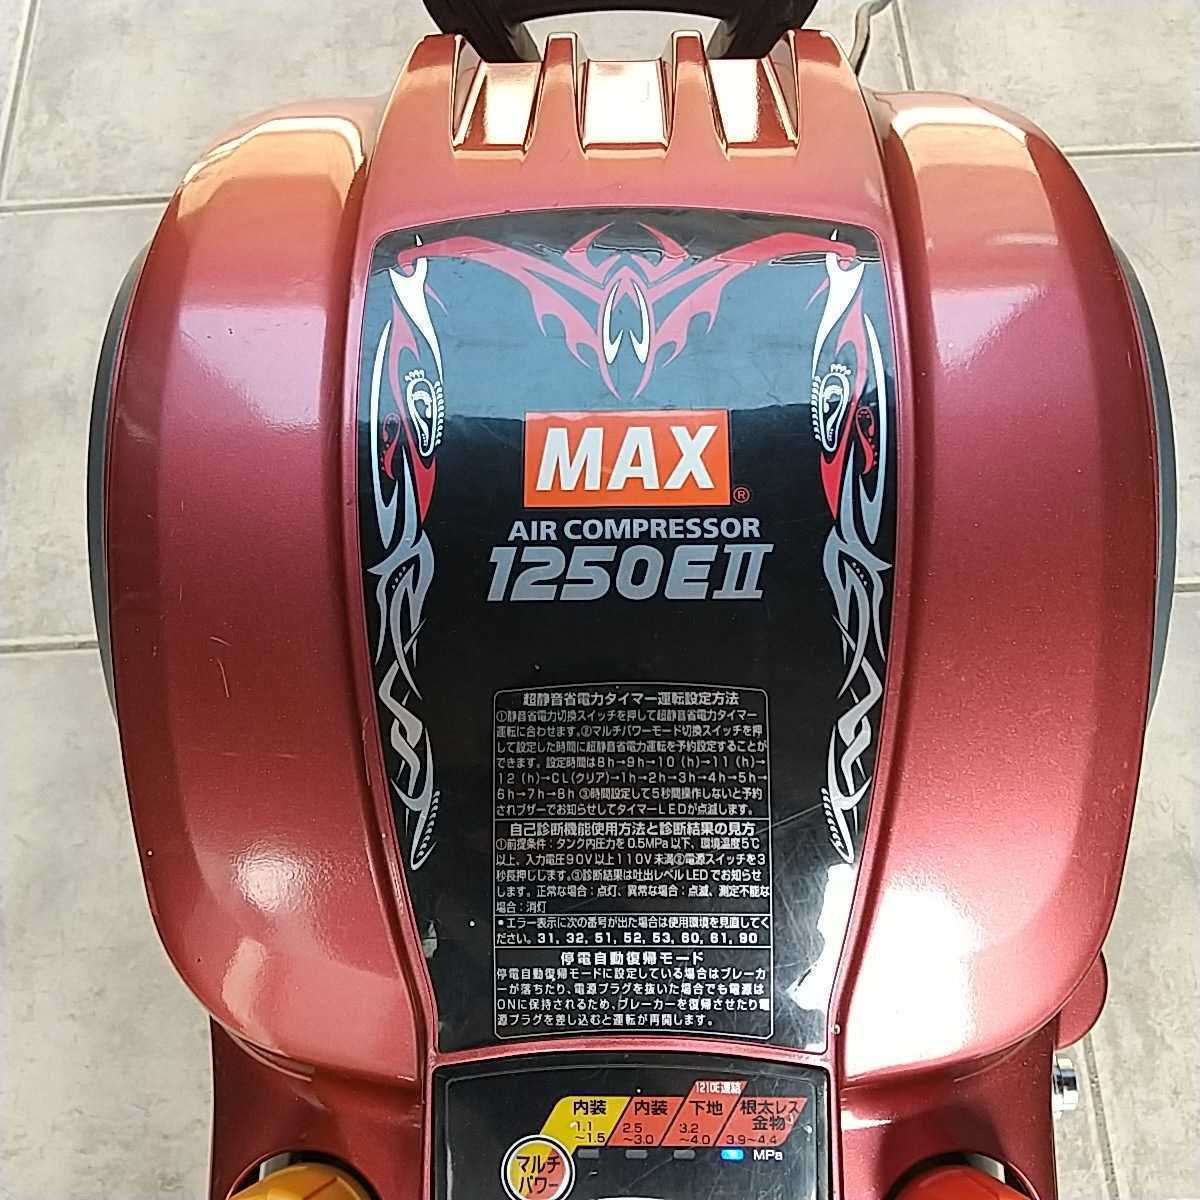 MAX コンプレッサー 1250e2 限定色 - texstyle.dk